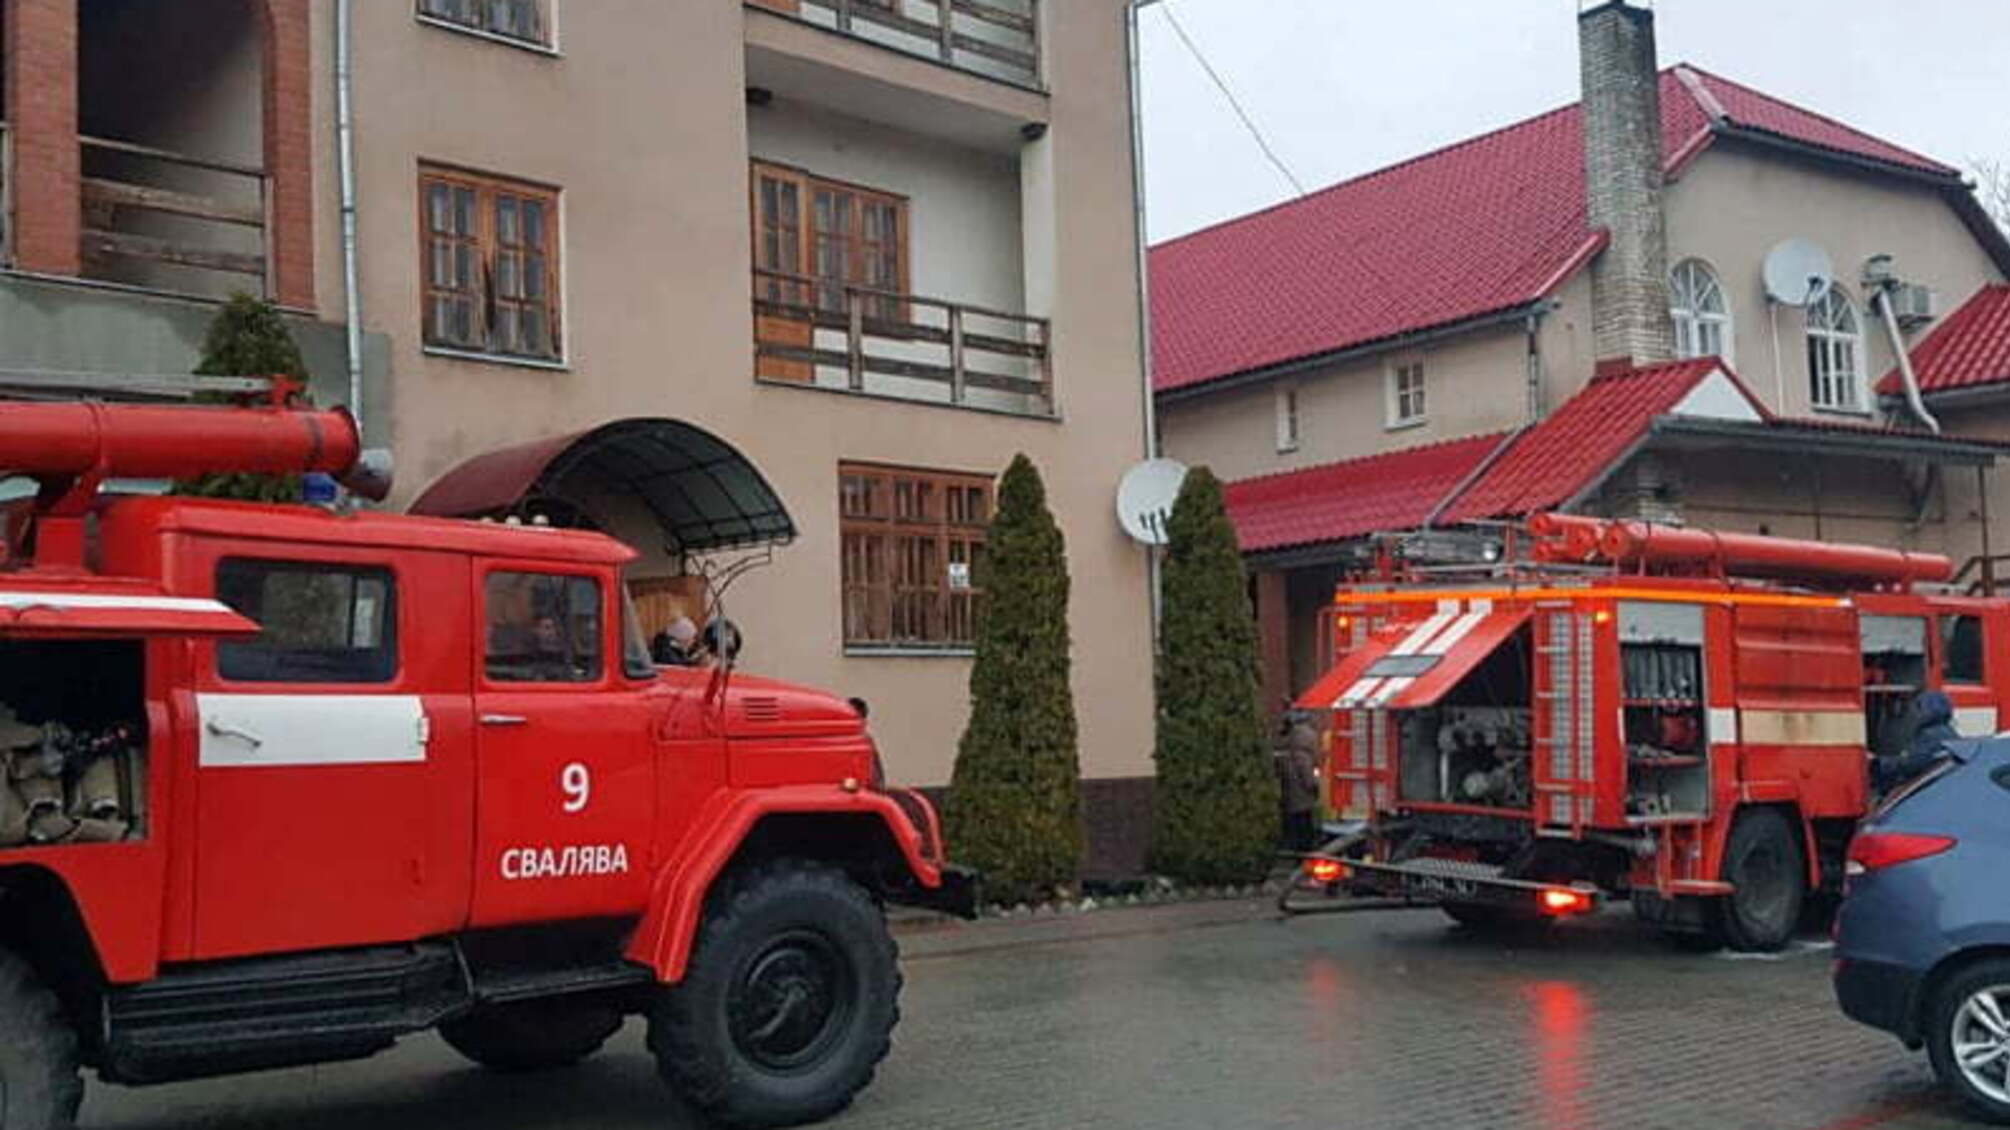 Закарпатська область: на пожежі врятовано одну людину та 37 евакуйовані